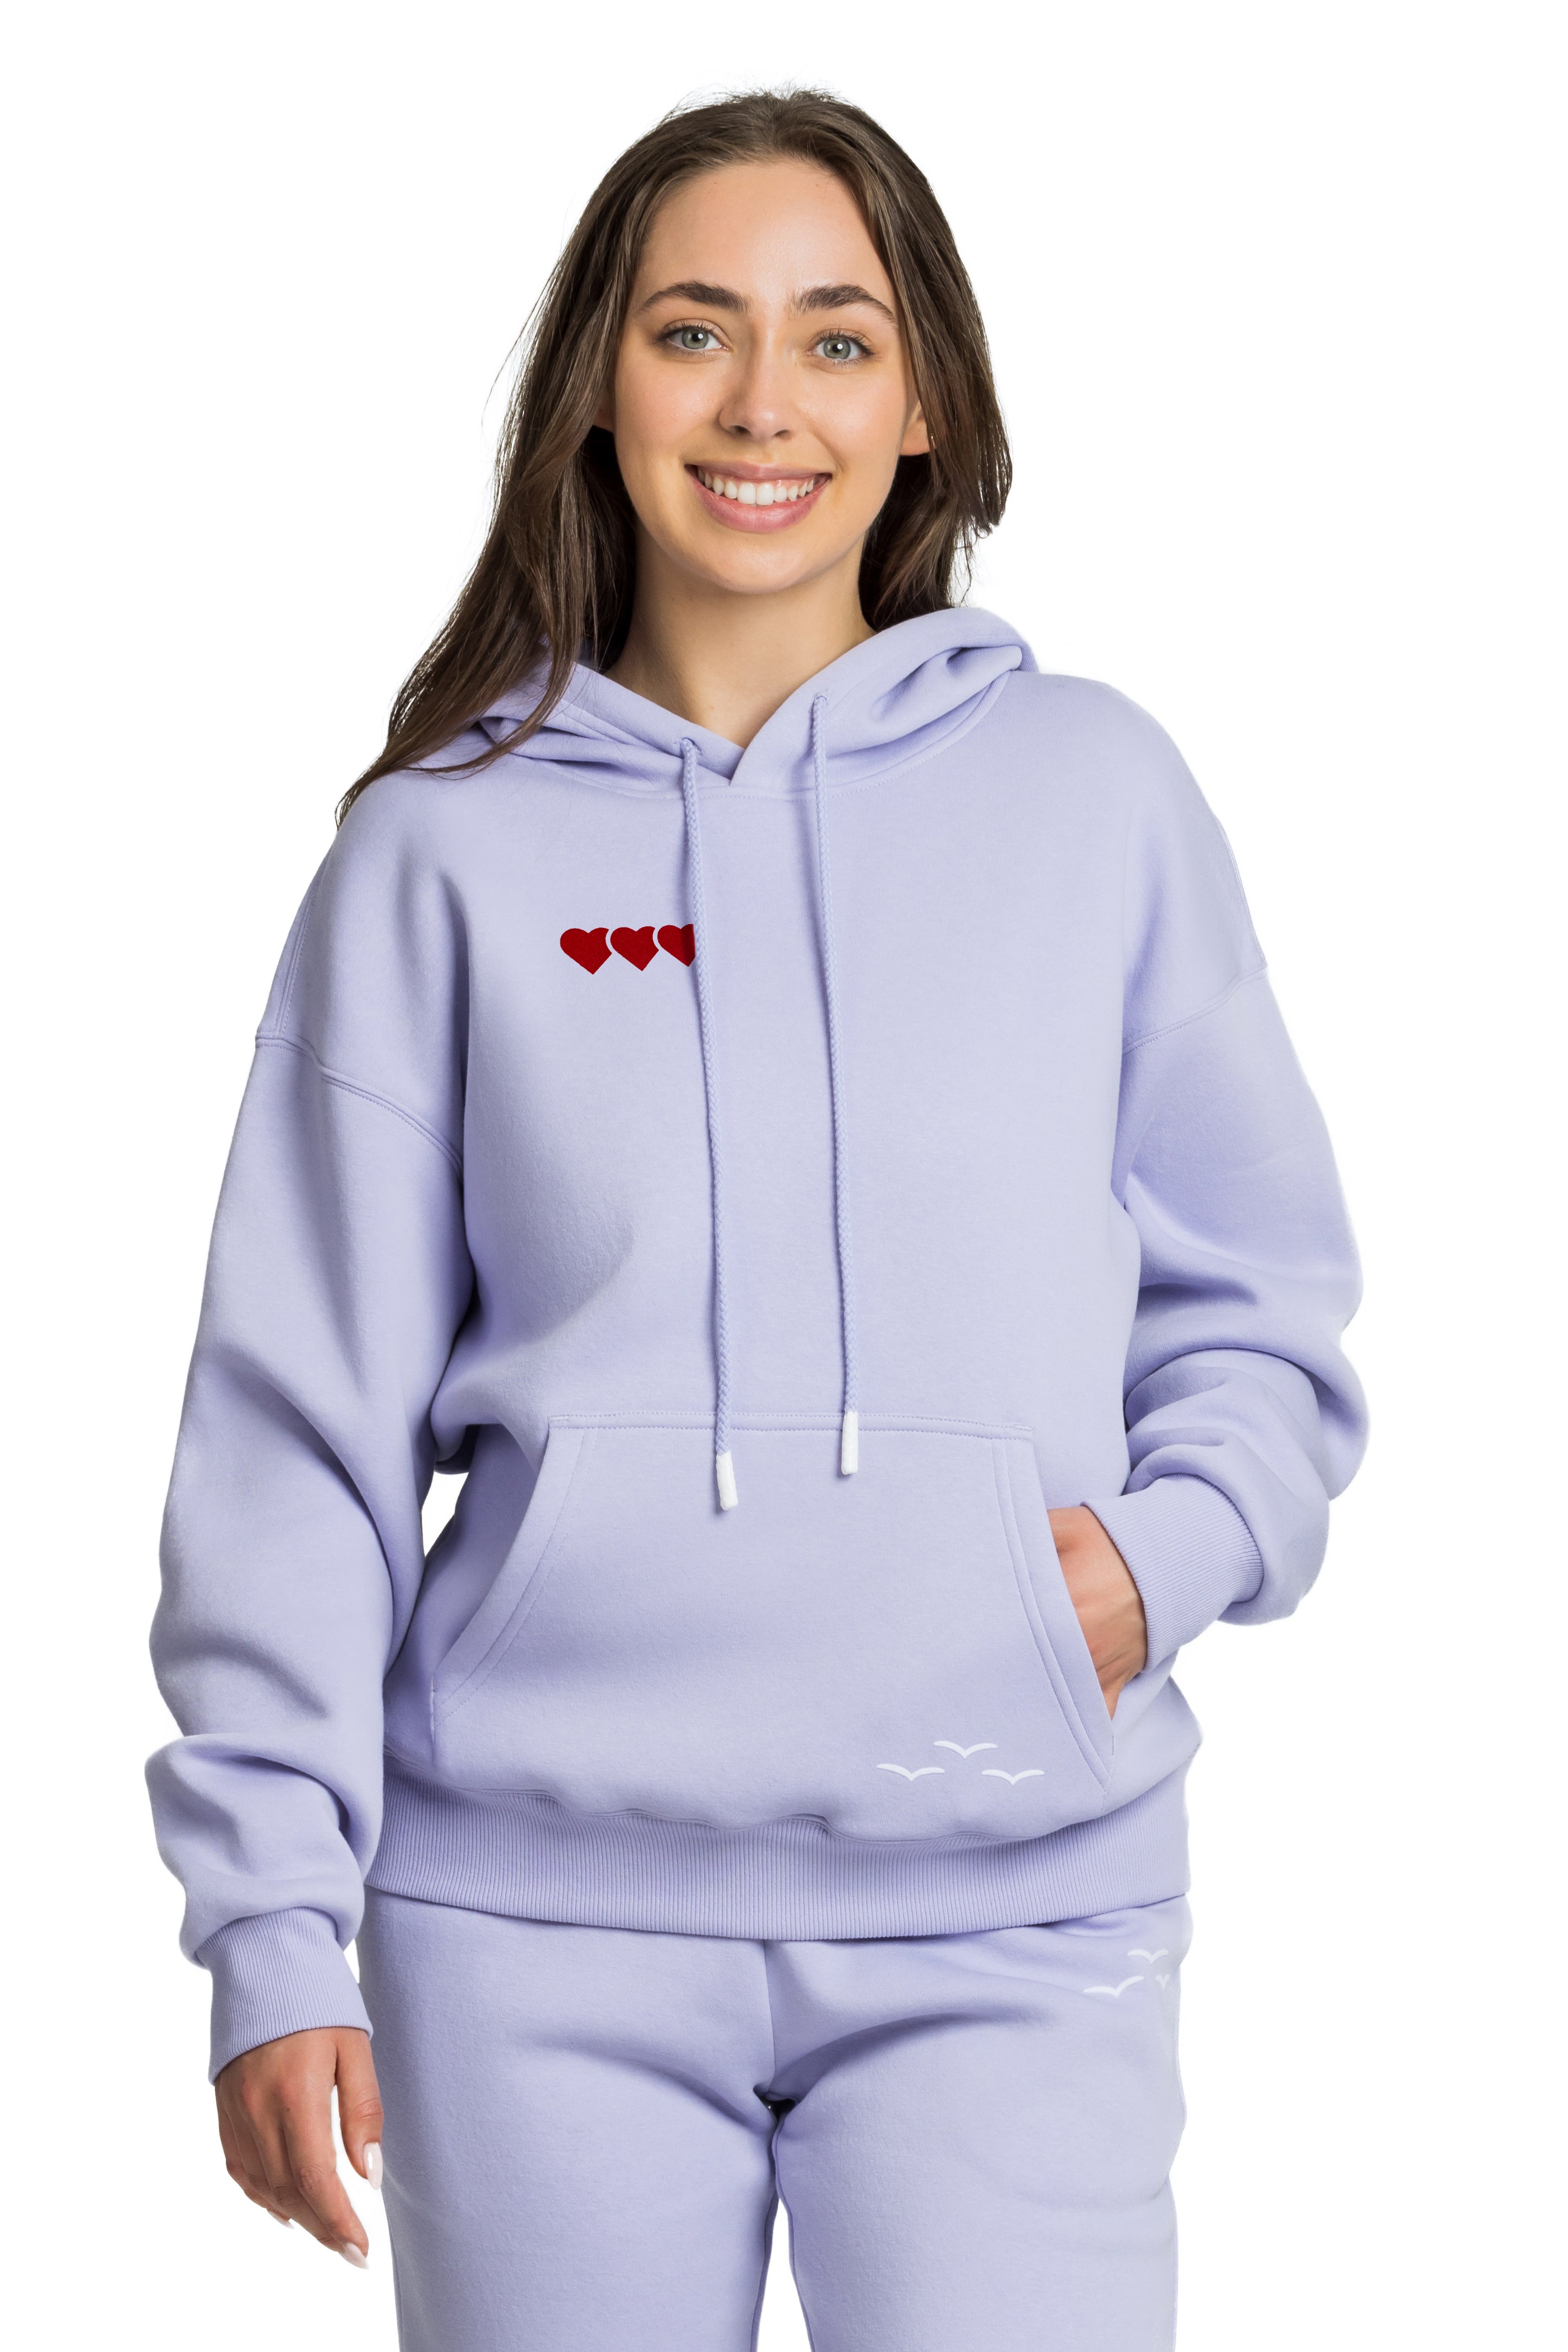 Chlo heart hoodie in Lavender